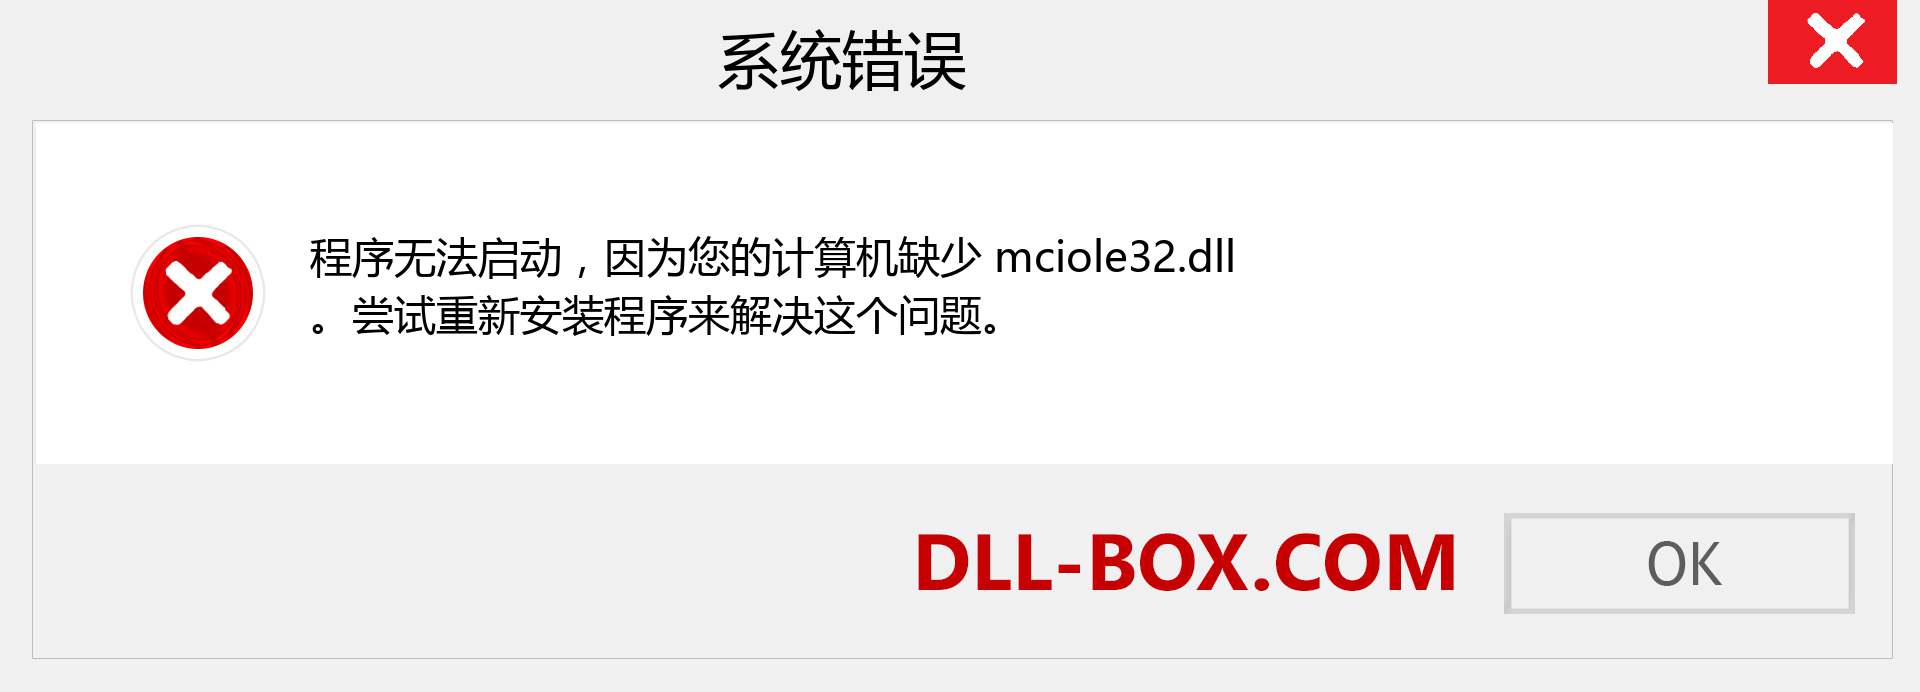 mciole32.dll 文件丢失？。 适用于 Windows 7、8、10 的下载 - 修复 Windows、照片、图像上的 mciole32 dll 丢失错误